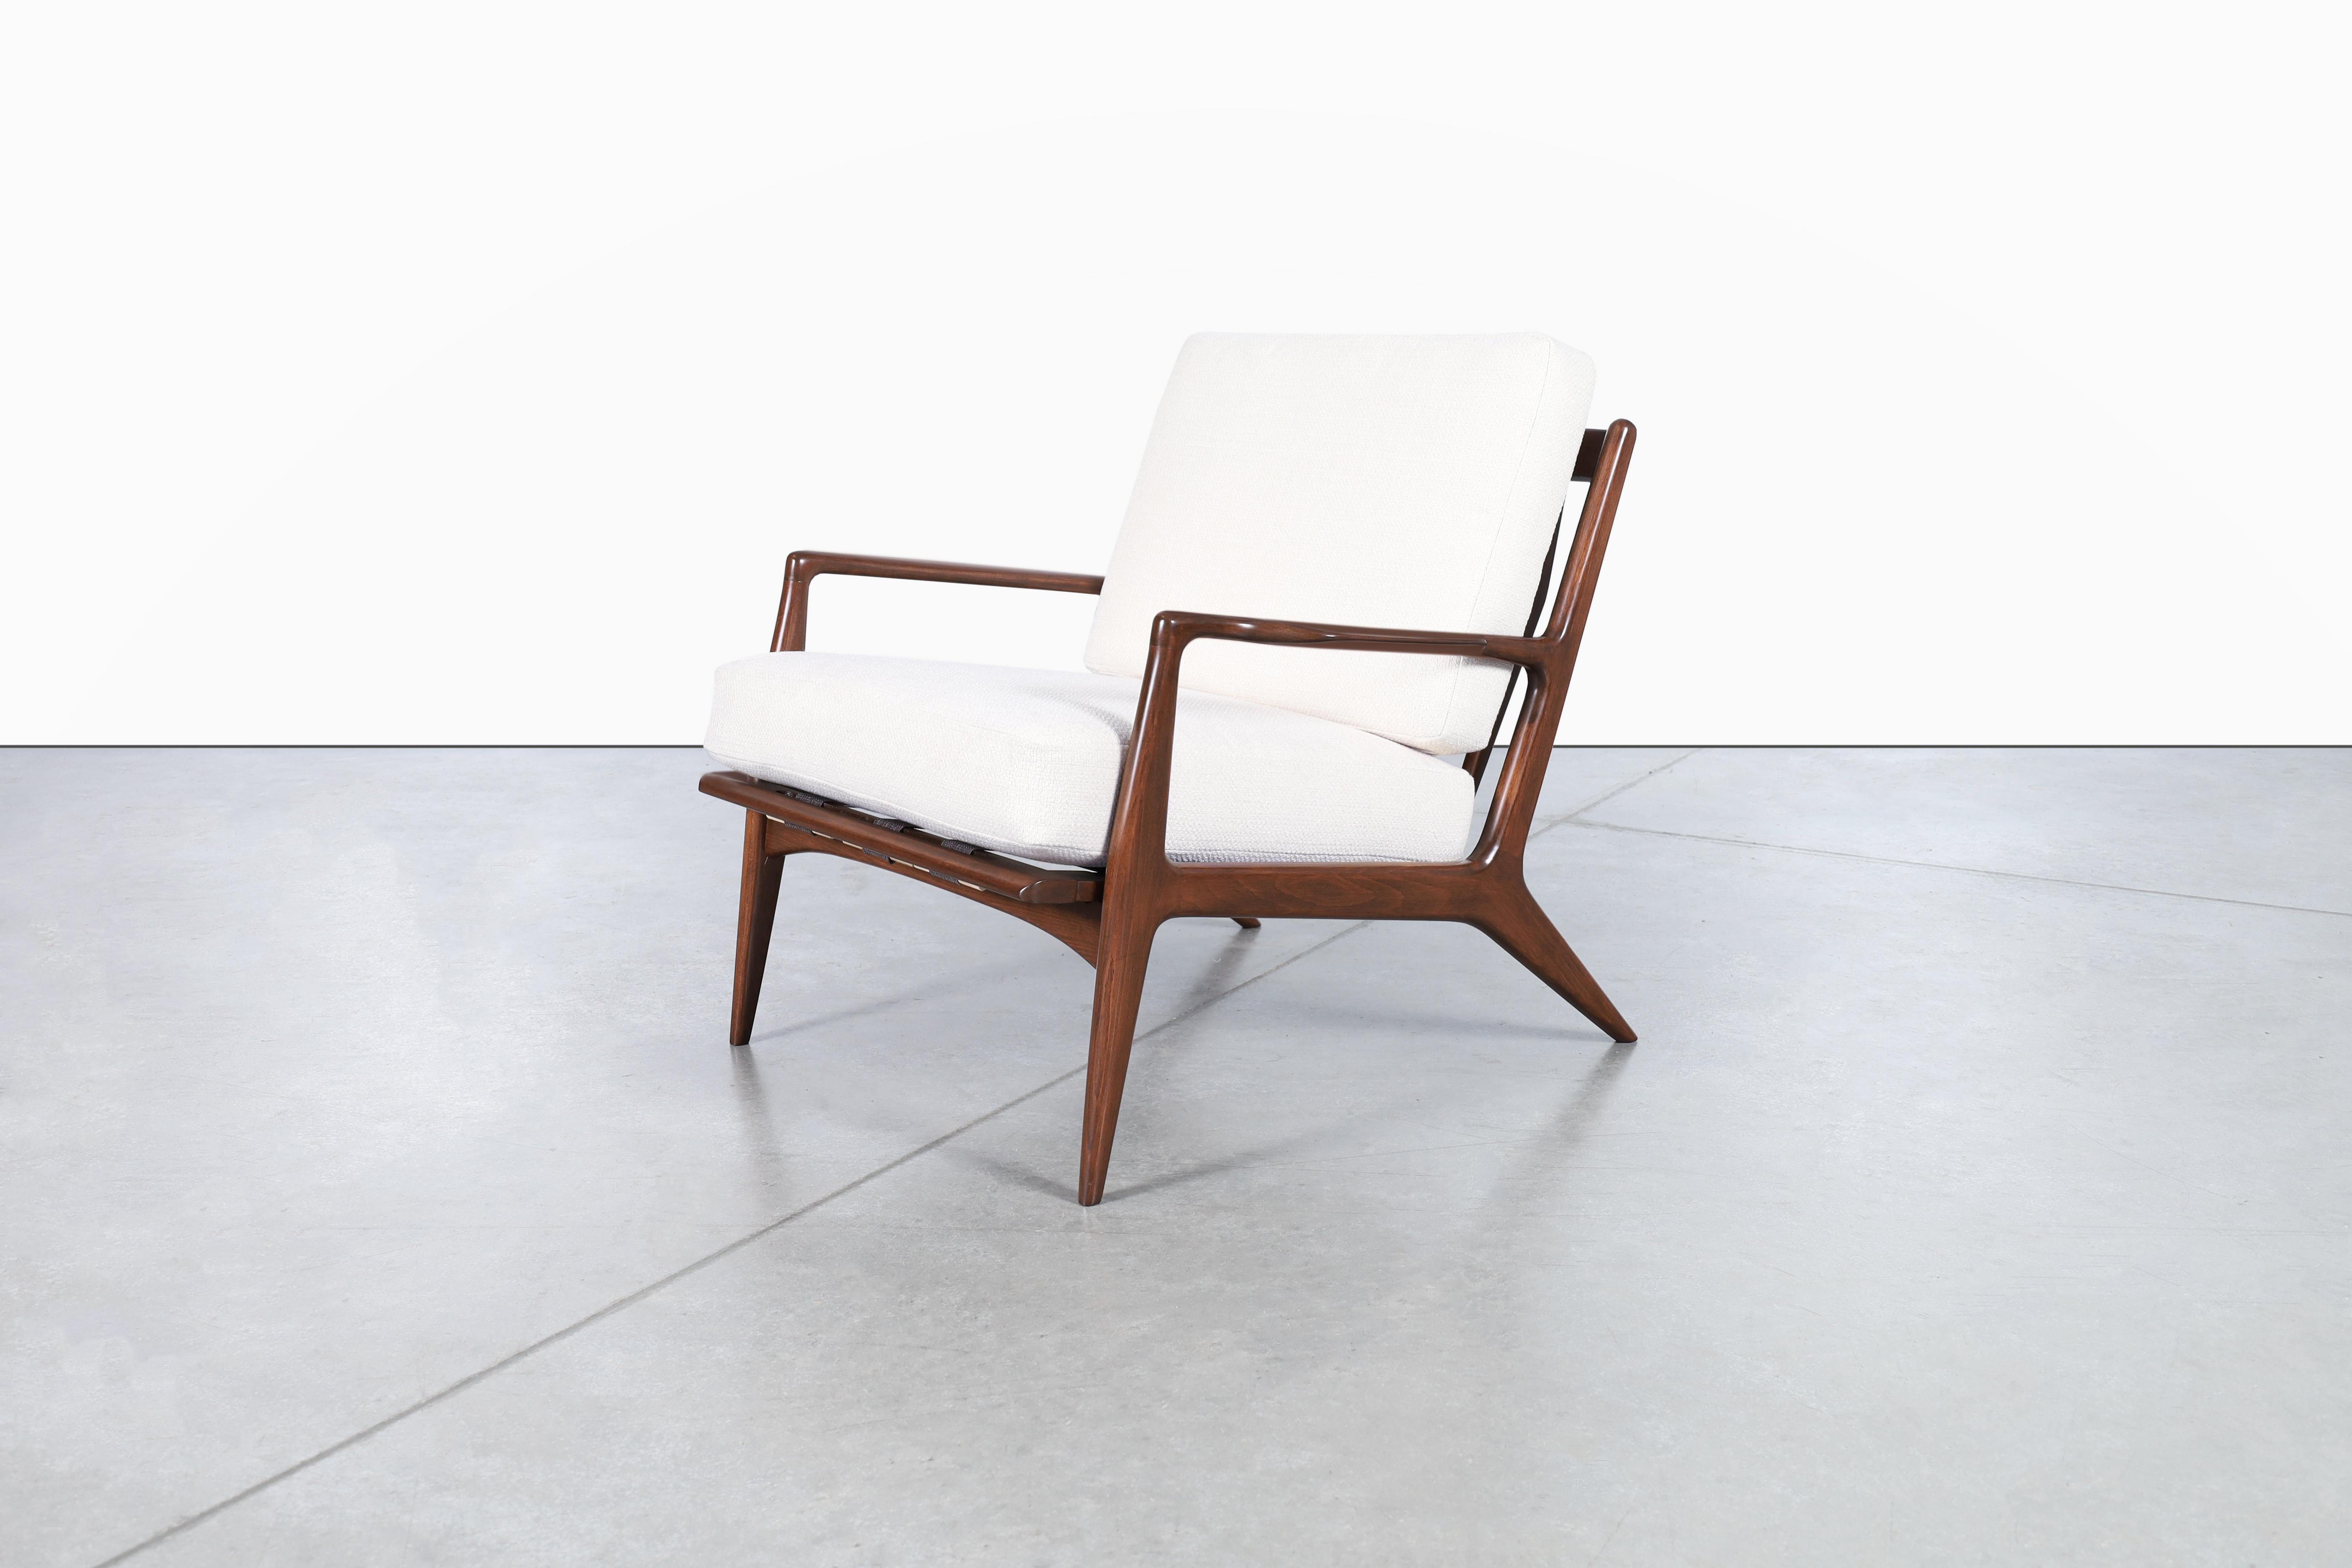 Étonnante chaise longue moderne danoise en noyer conçue par l'architecte et fabricant de meubles Ib Kofod Larsen et fabriquée par Selig au Danemark, vers les années 1960. Ce fabuleux fauteuil de salon présente un cadre en hêtre massif teinté noyer